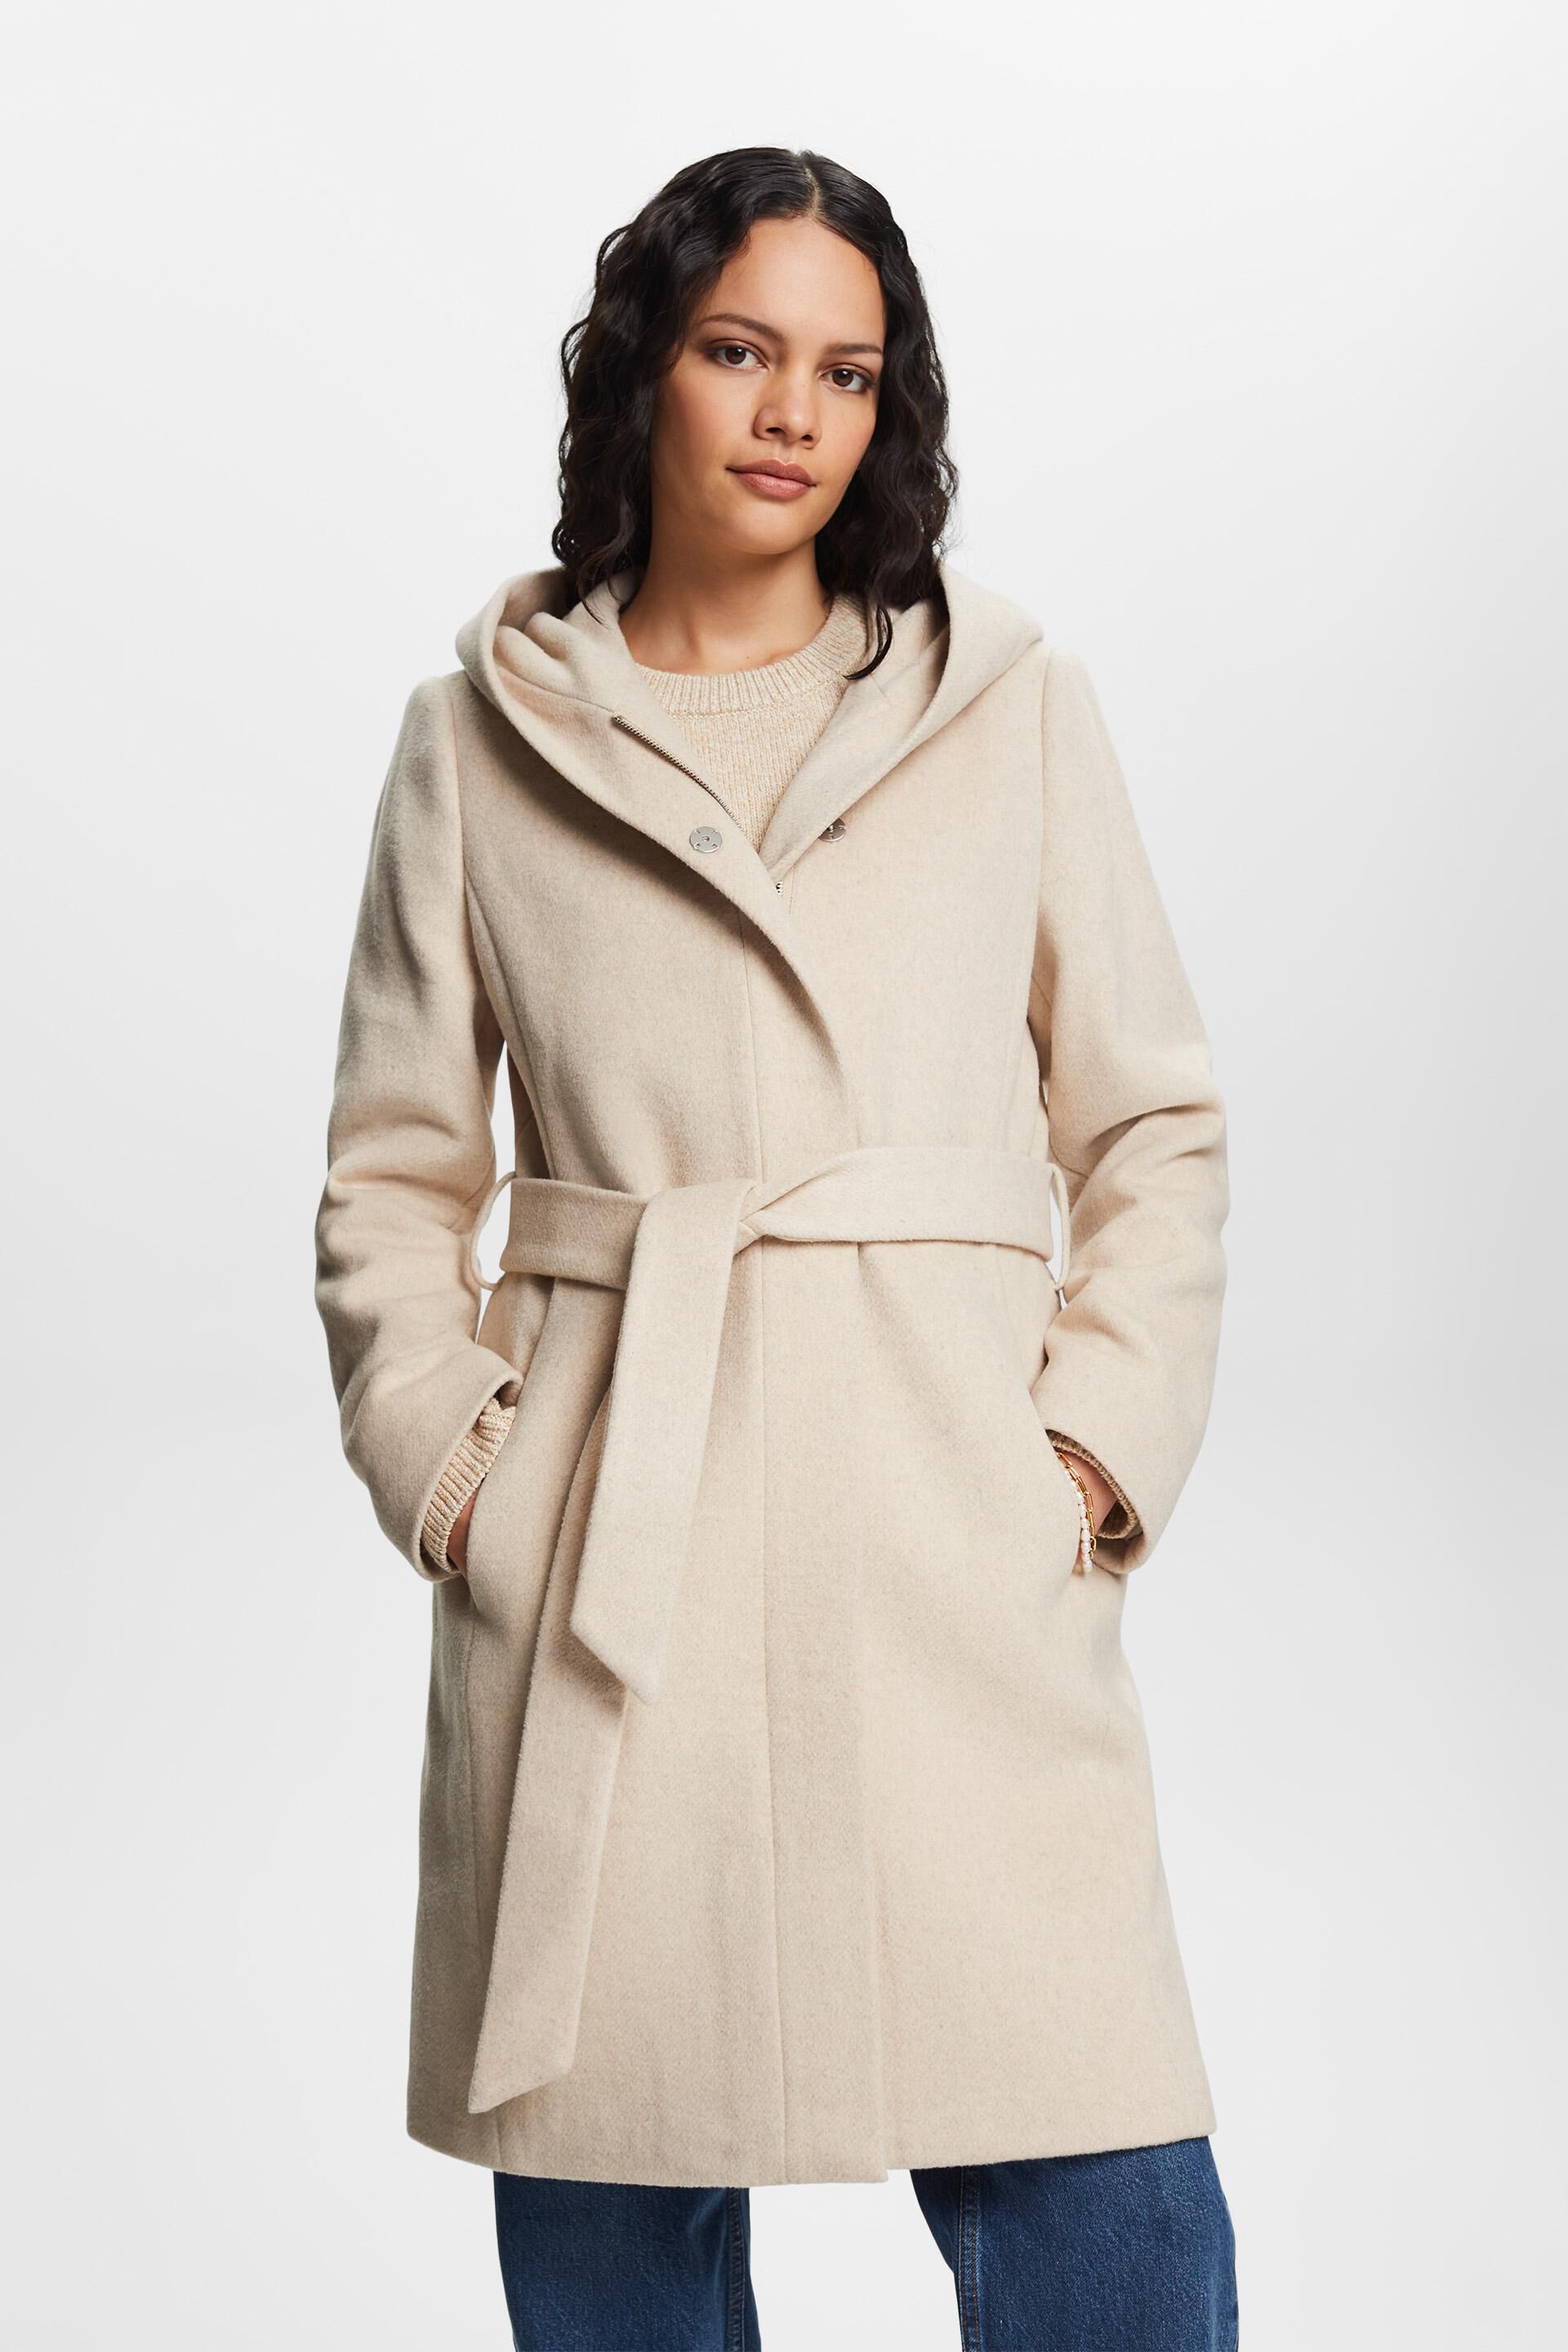 Esprit Damen Recycelt: Mantel aus Gürtel mit Kapuze Wollmischung und